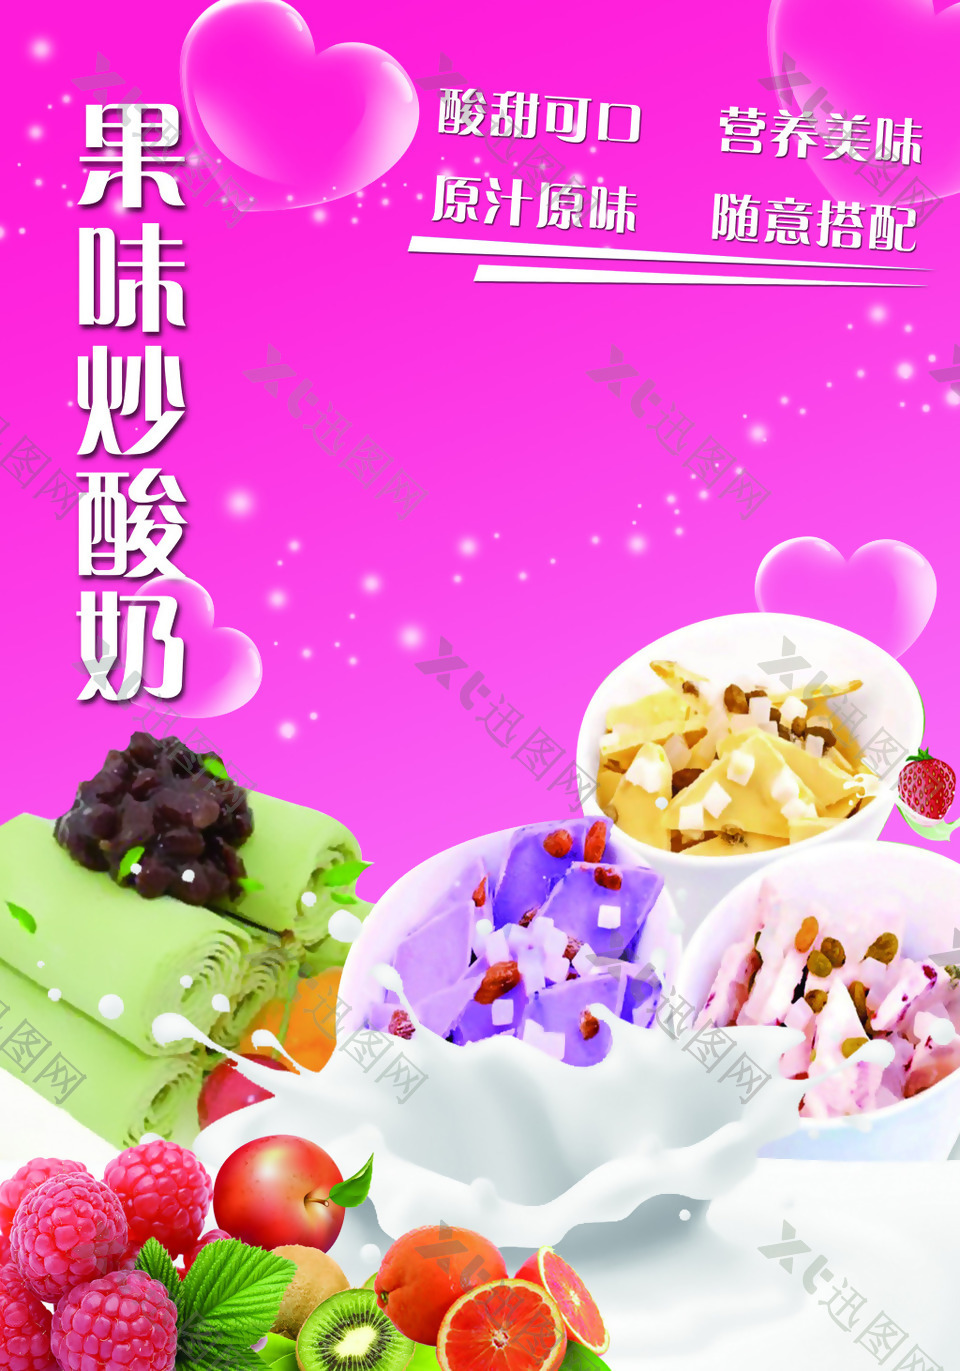 果味炒酸奶海报